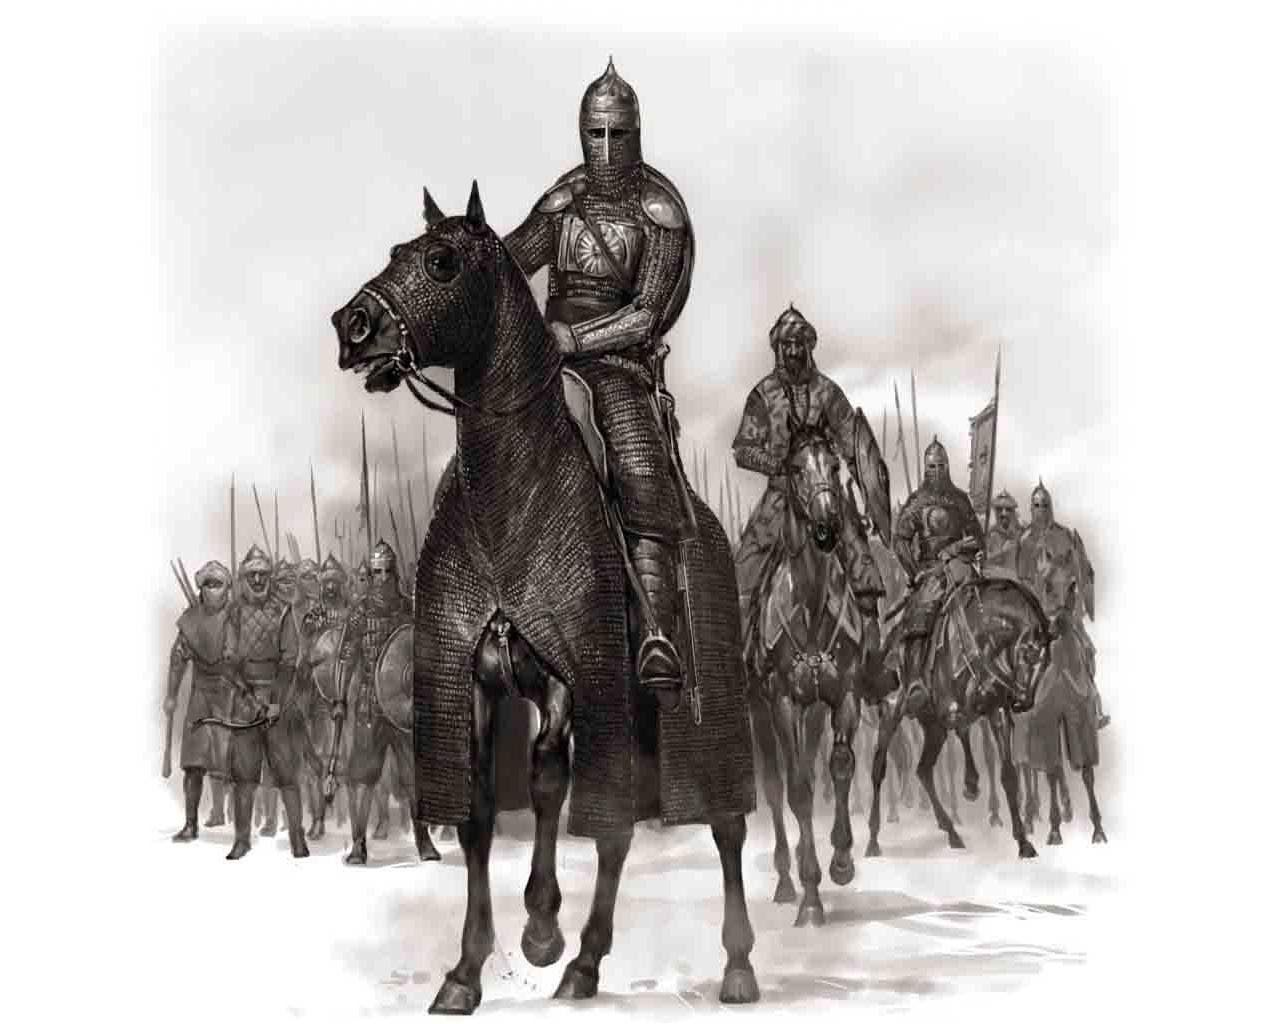 وقفت قبيلة بنو حنيفة مع جيش المسلمين في معركة عقرباء